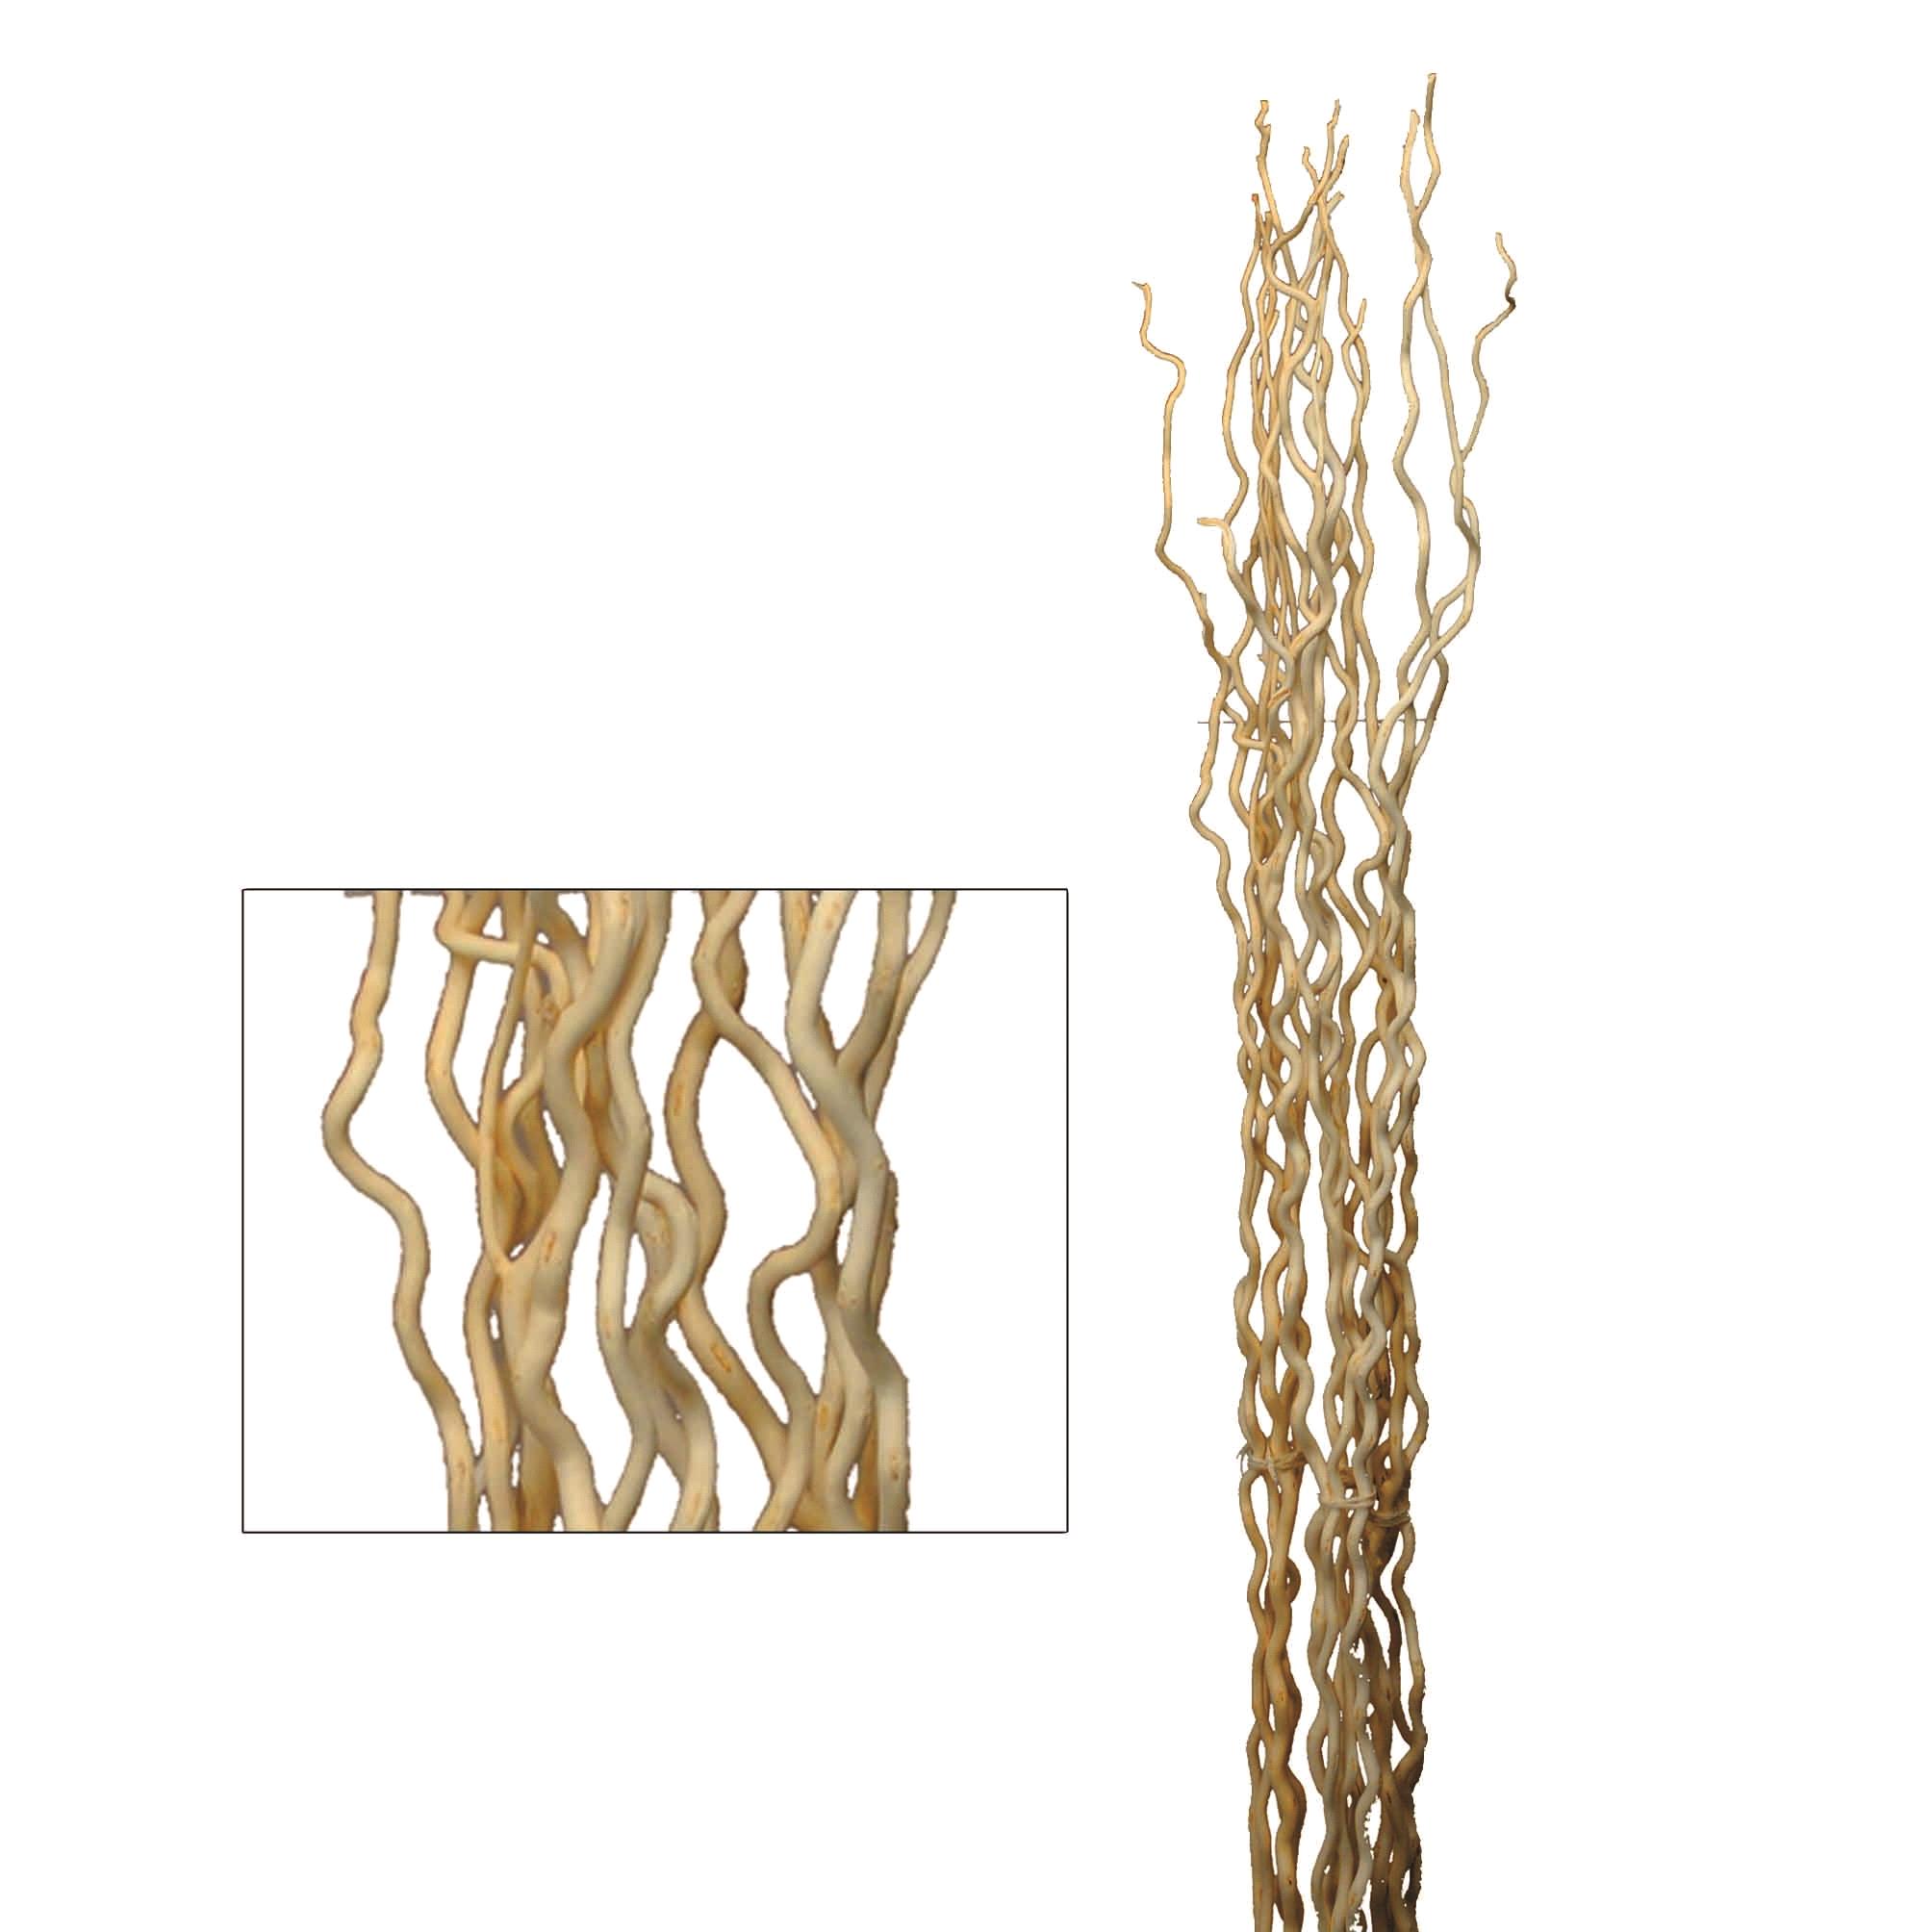 Trockenblumen, Bambus,Manzanit, Bänder und natürliche Strukturen, ONDA/KUWA 165H CM 5 PZ SBIANC.